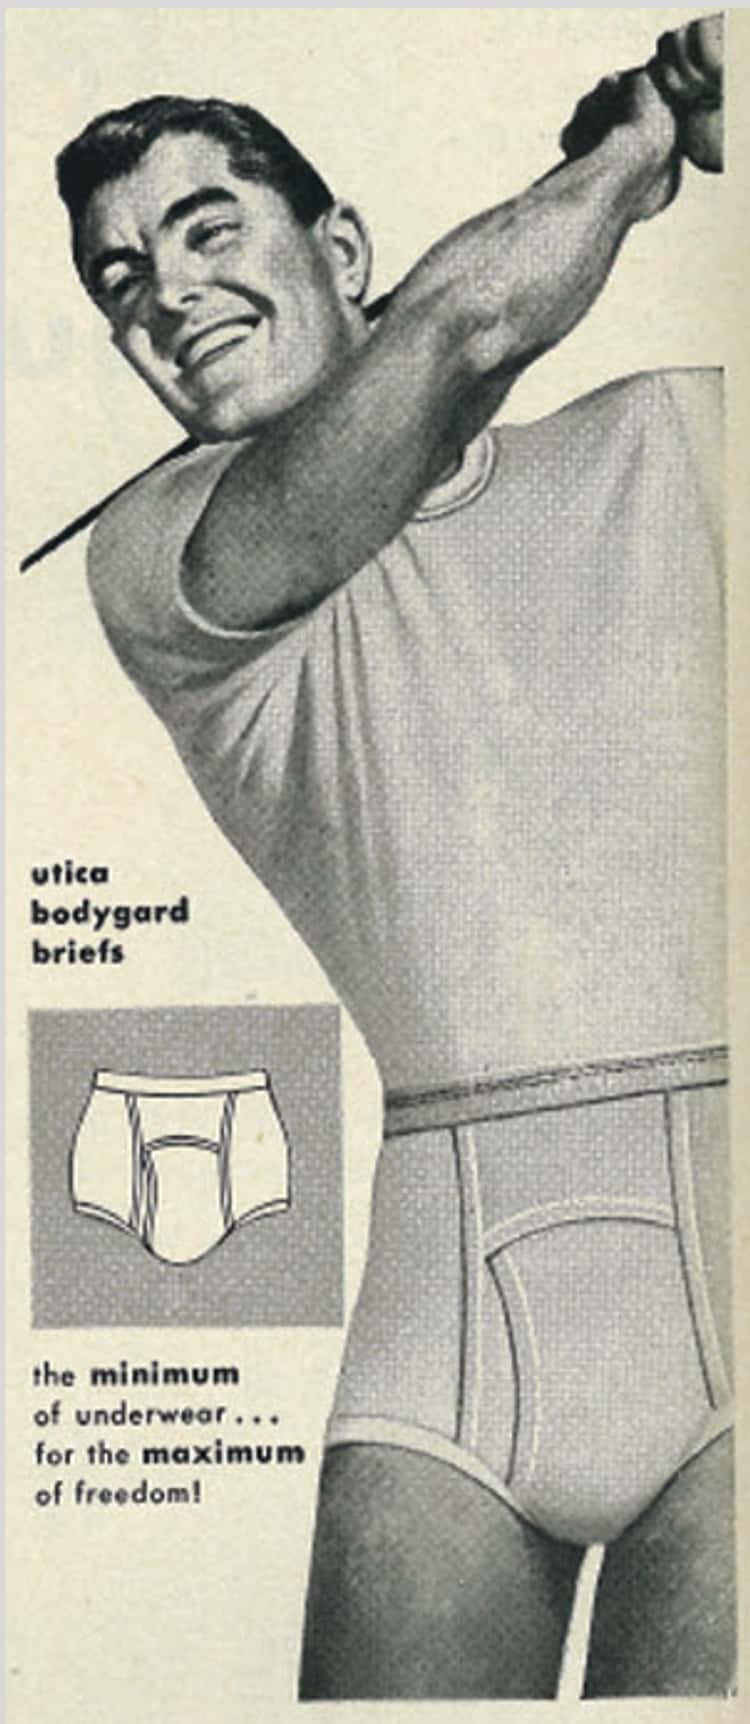 A Short History of Mens Underwear